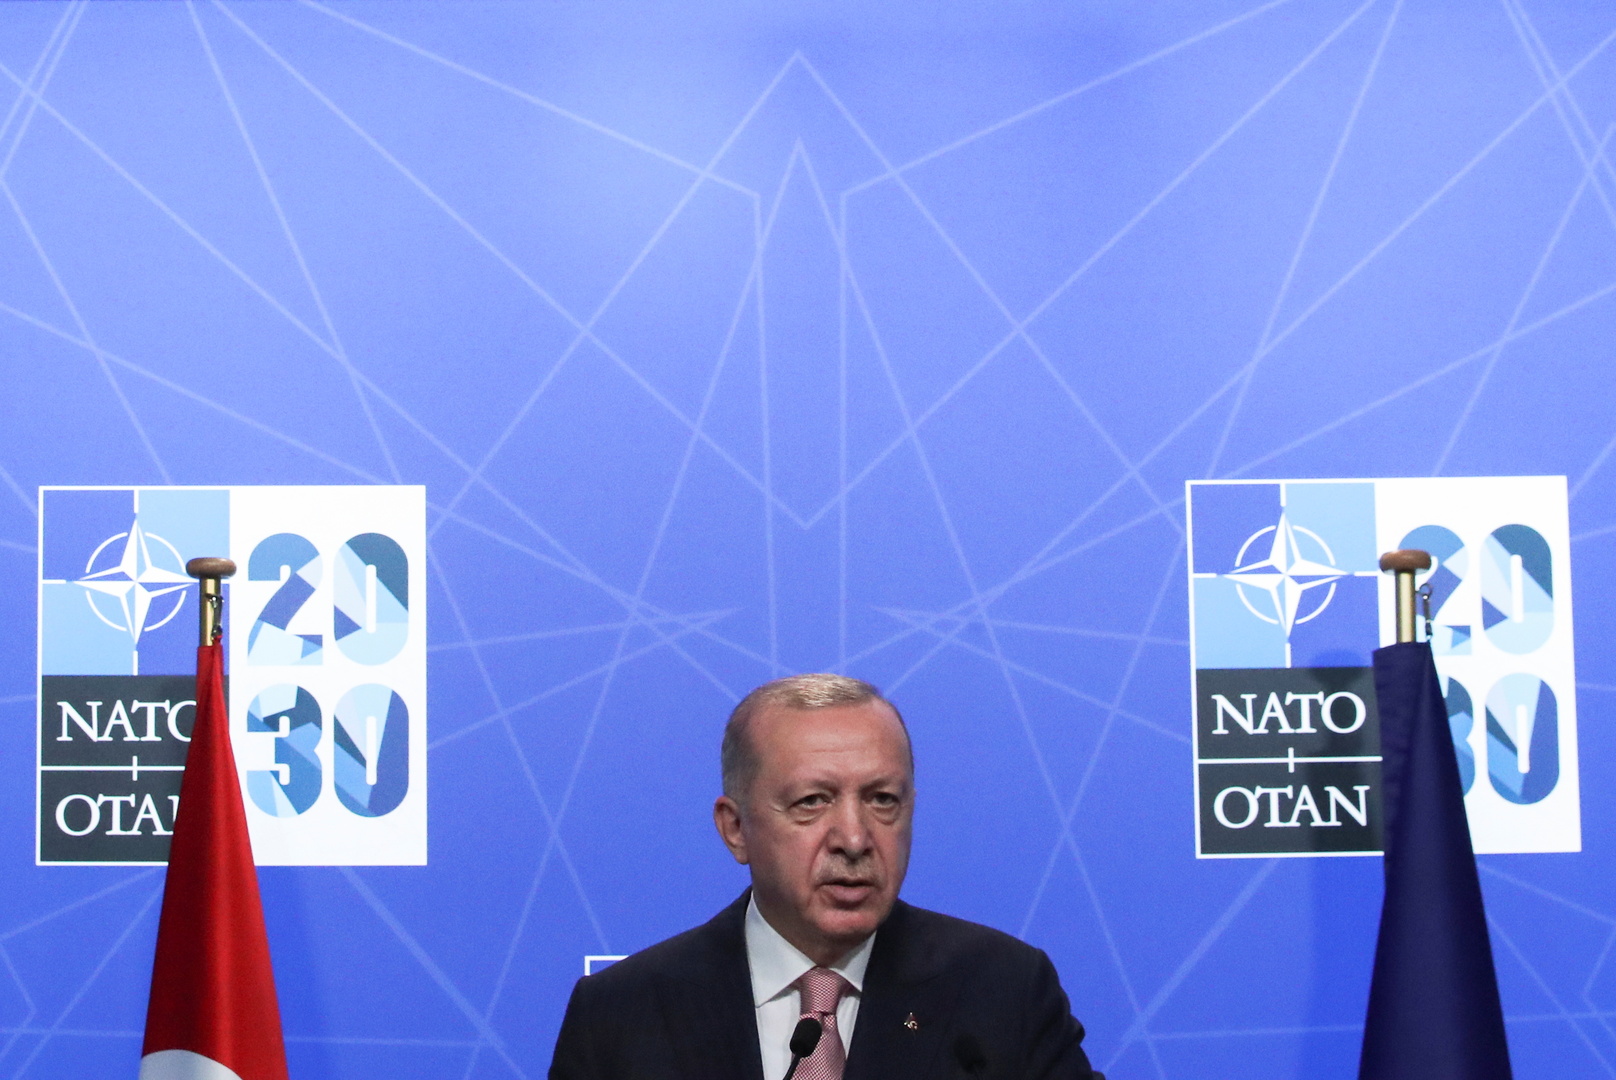 أردوغان: اتفقنا مع ميتسوتاكيس على مواصلة الحوار بين تركيا واليونان دون إشراك طرف ثالث